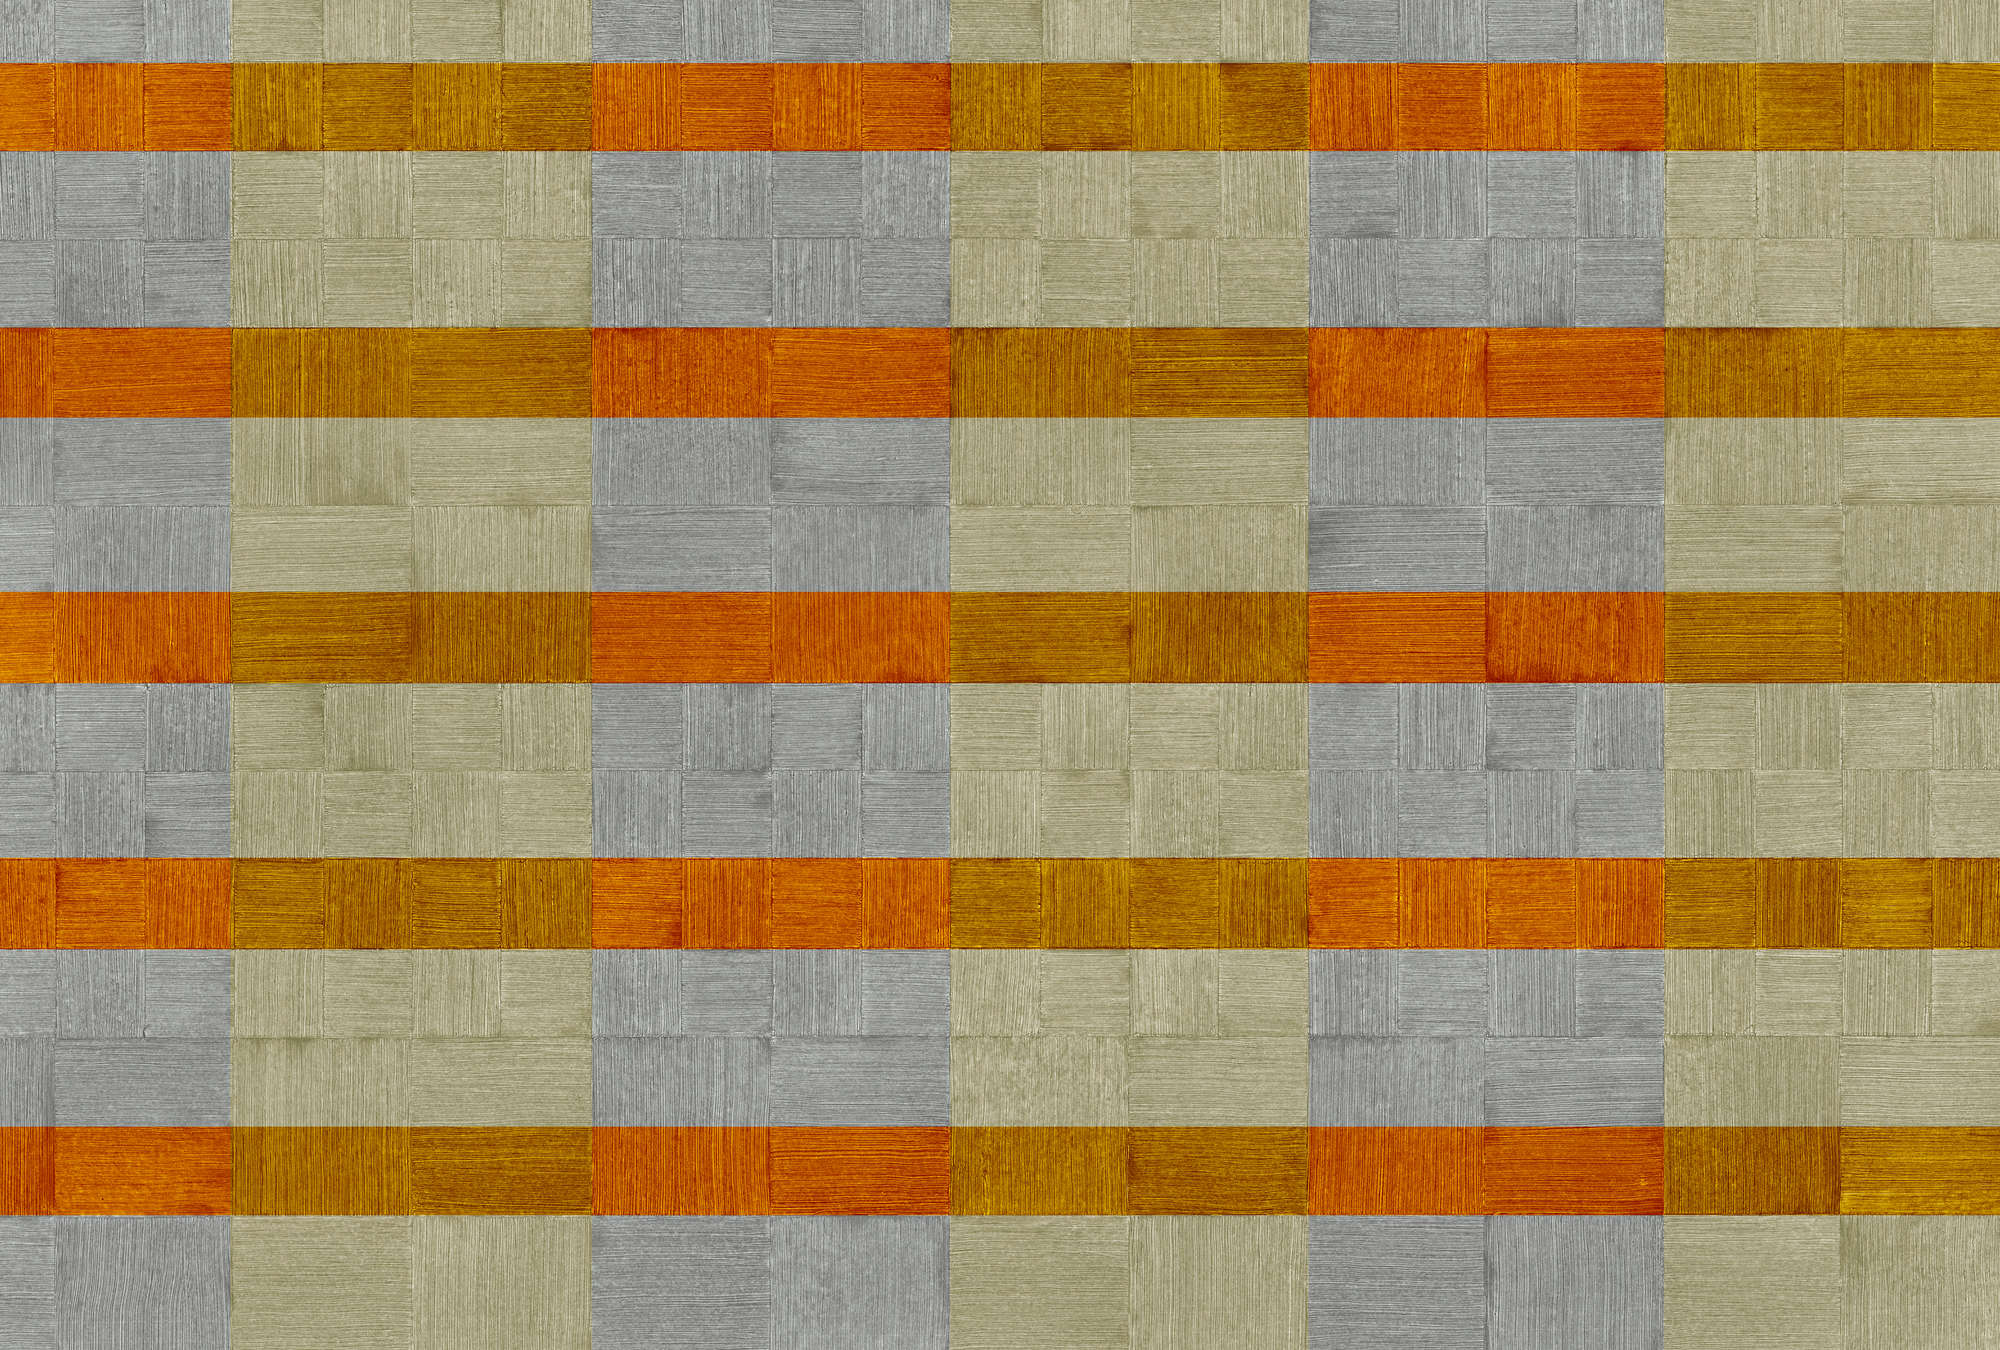             Fototapete Streifen & kariertes Strukturdesign – Grau, Orange, Braun
        